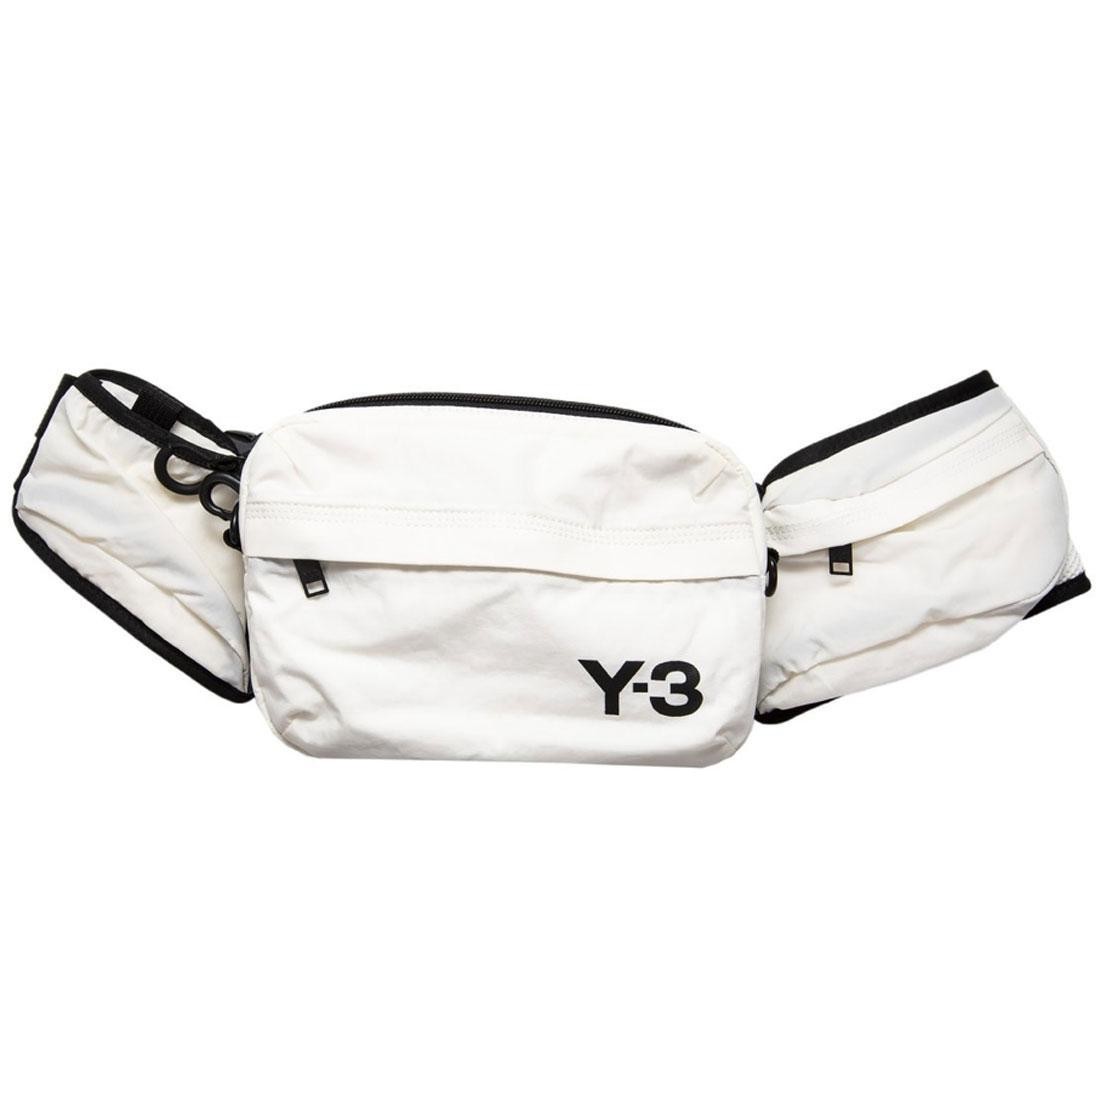 y3 sling bag